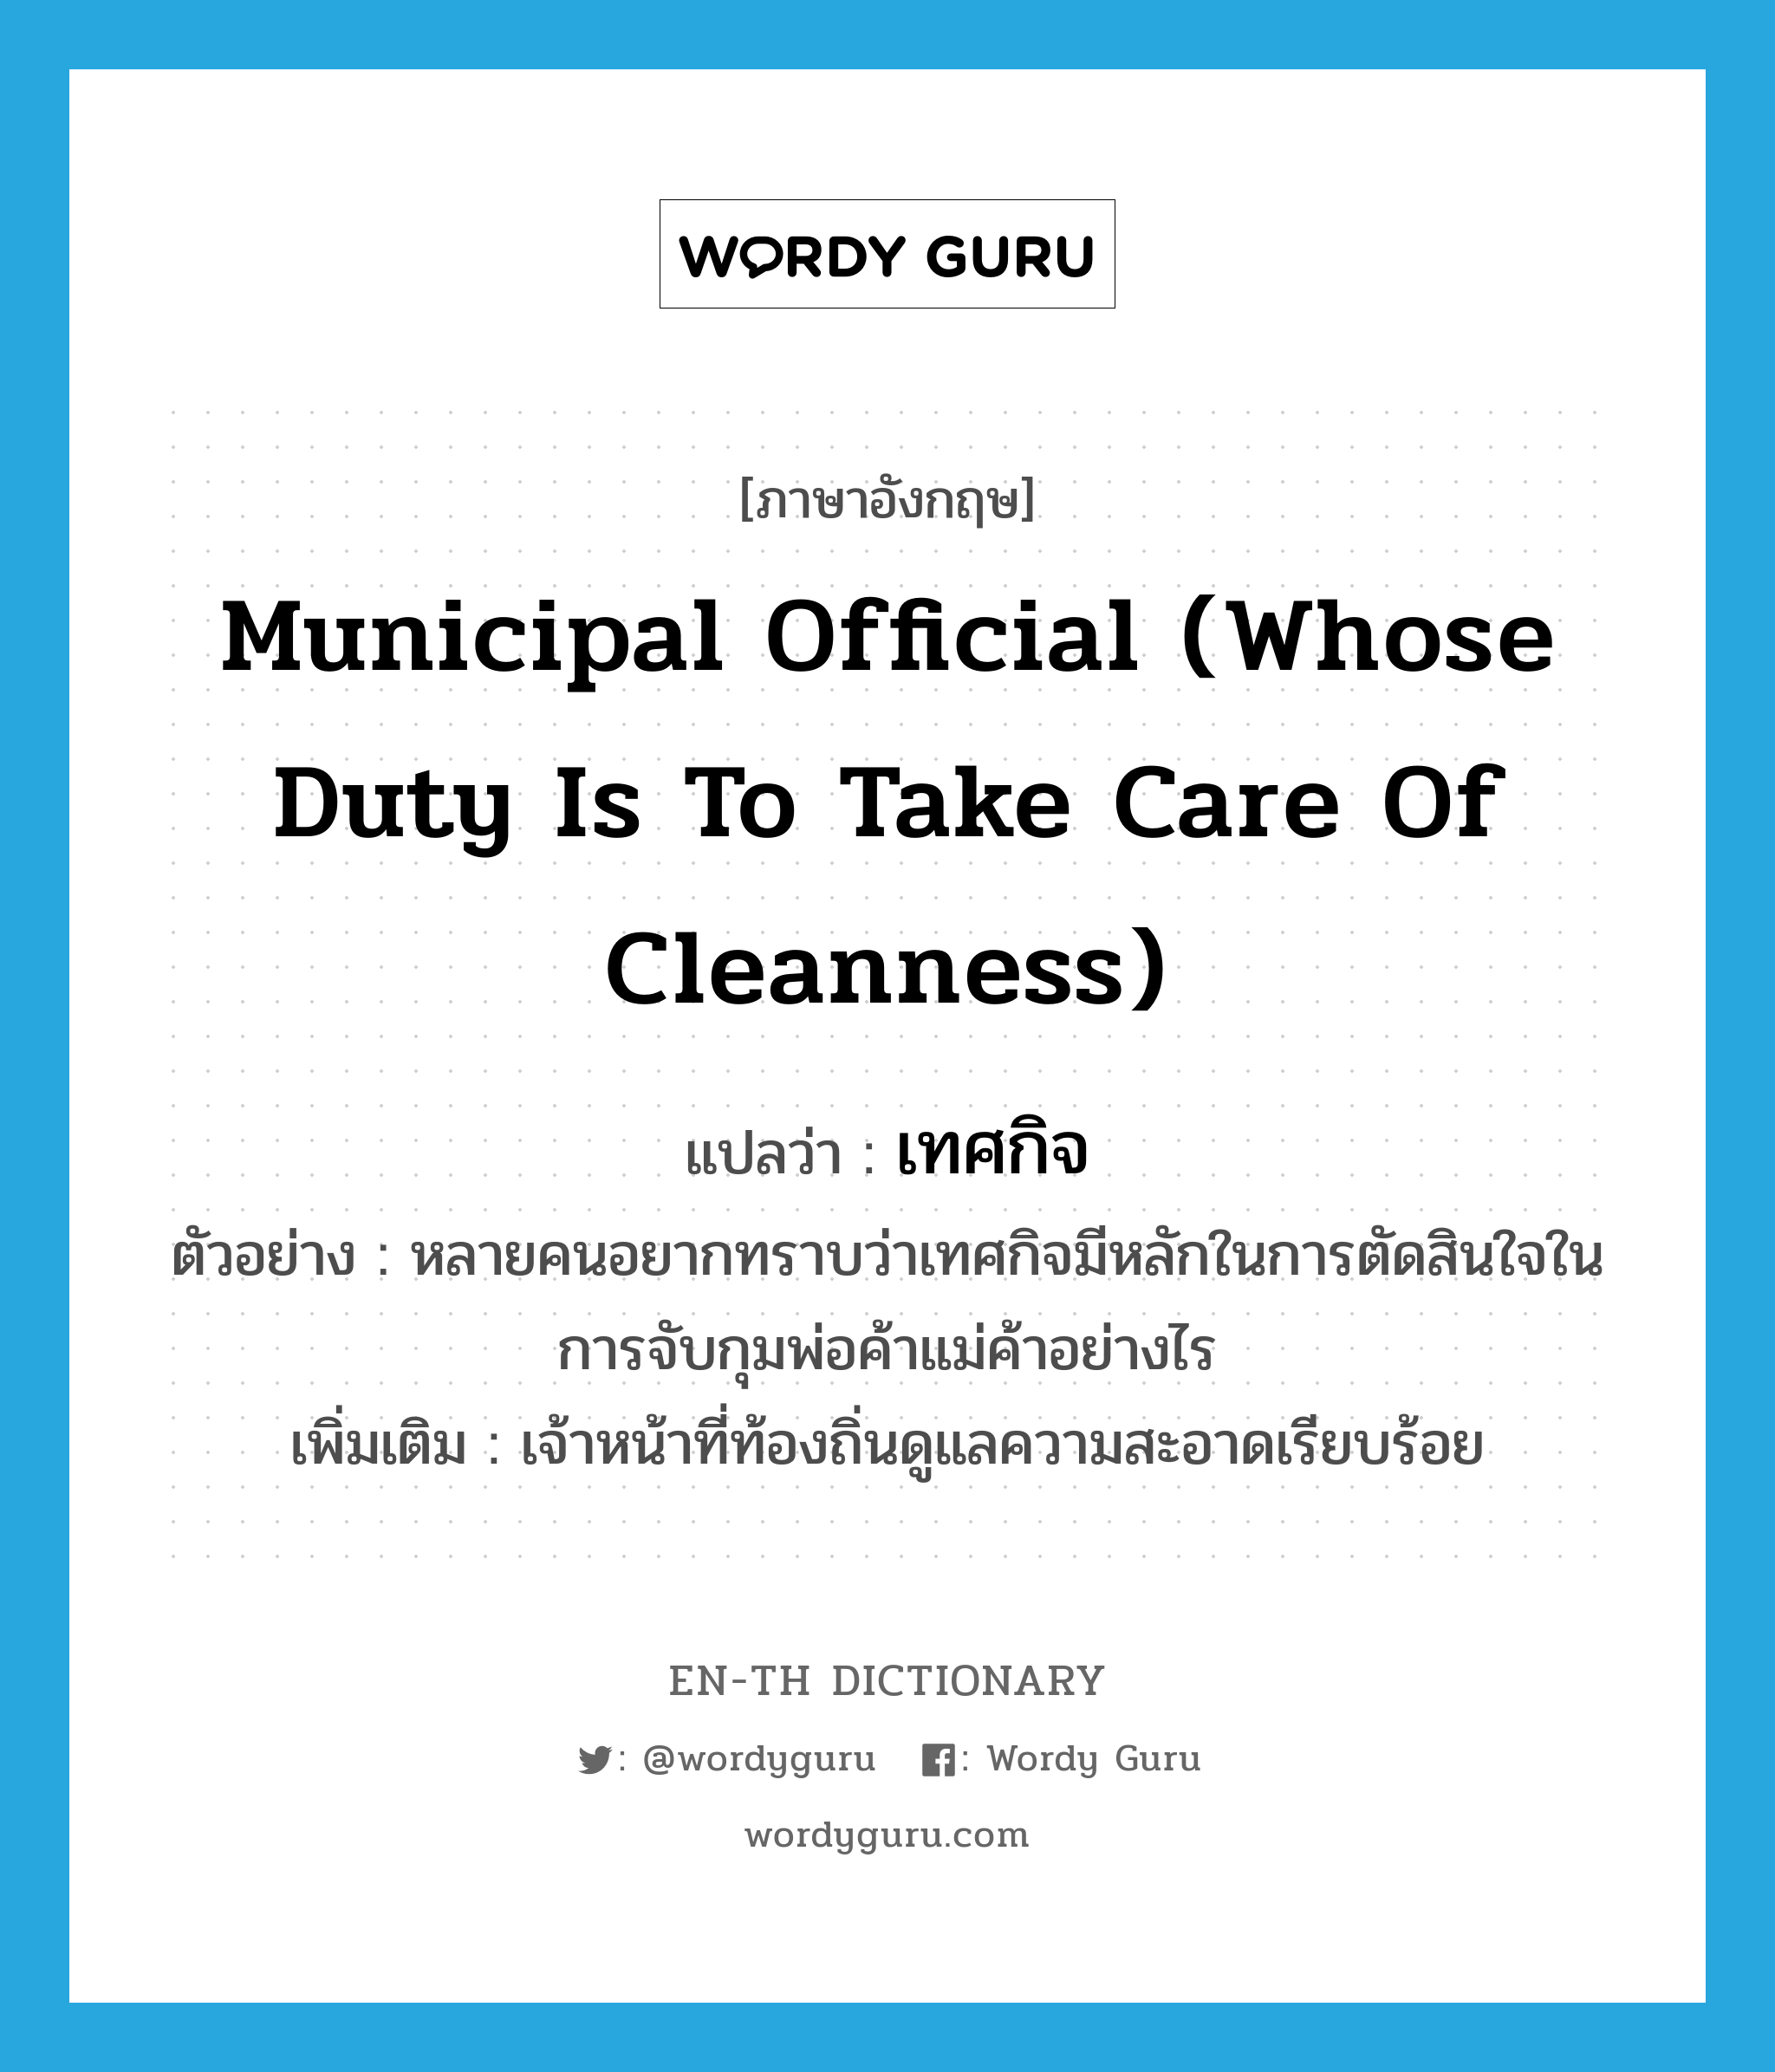 เทศกิจ ภาษาอังกฤษ?, คำศัพท์ภาษาอังกฤษ เทศกิจ แปลว่า municipal official (whose duty is to take care of cleanness) ประเภท N ตัวอย่าง หลายคนอยากทราบว่าเทศกิจมีหลักในการตัดสินใจในการจับกุมพ่อค้าแม่ค้าอย่างไร เพิ่มเติม เจ้าหน้าที่ท้องถิ่นดูแลความสะอาดเรียบร้อย หมวด N